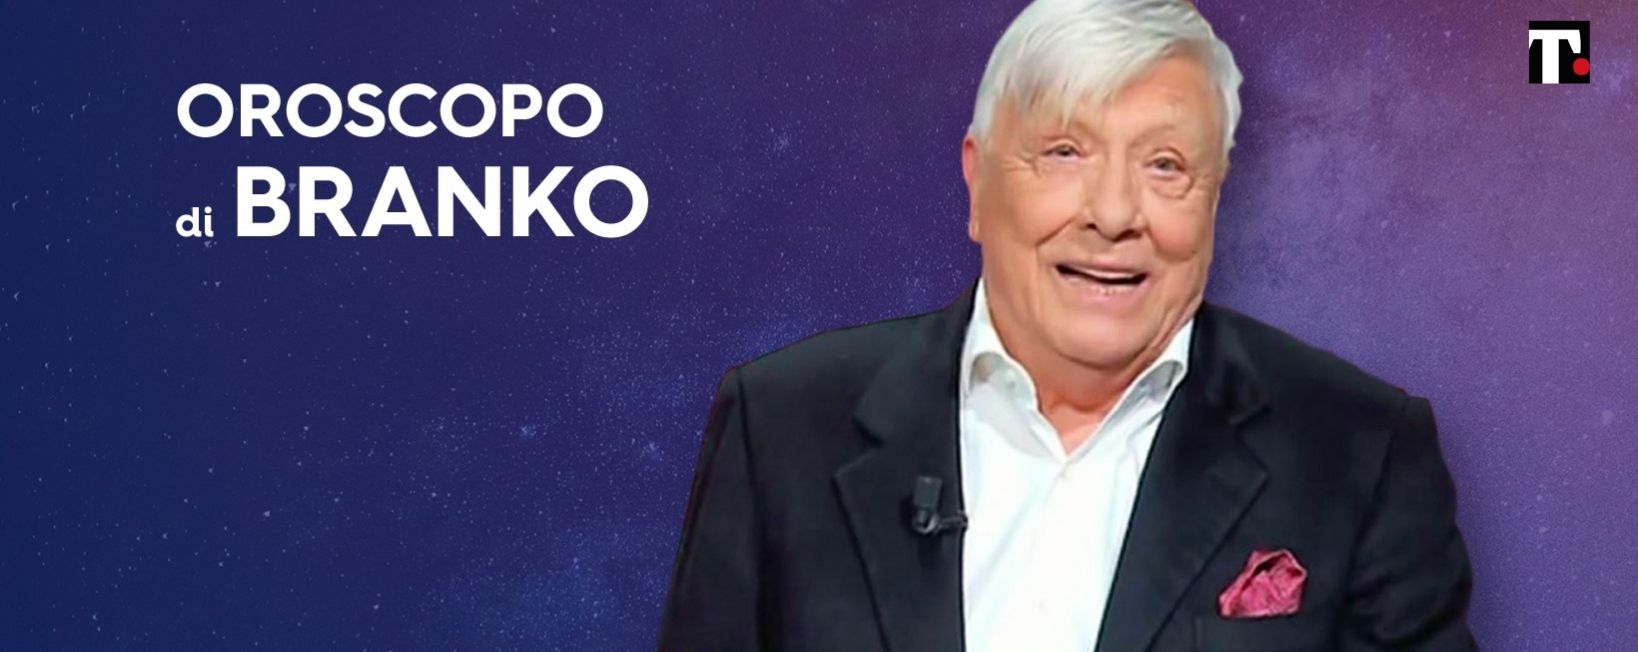 Oroscopo Branko febbraio 2022